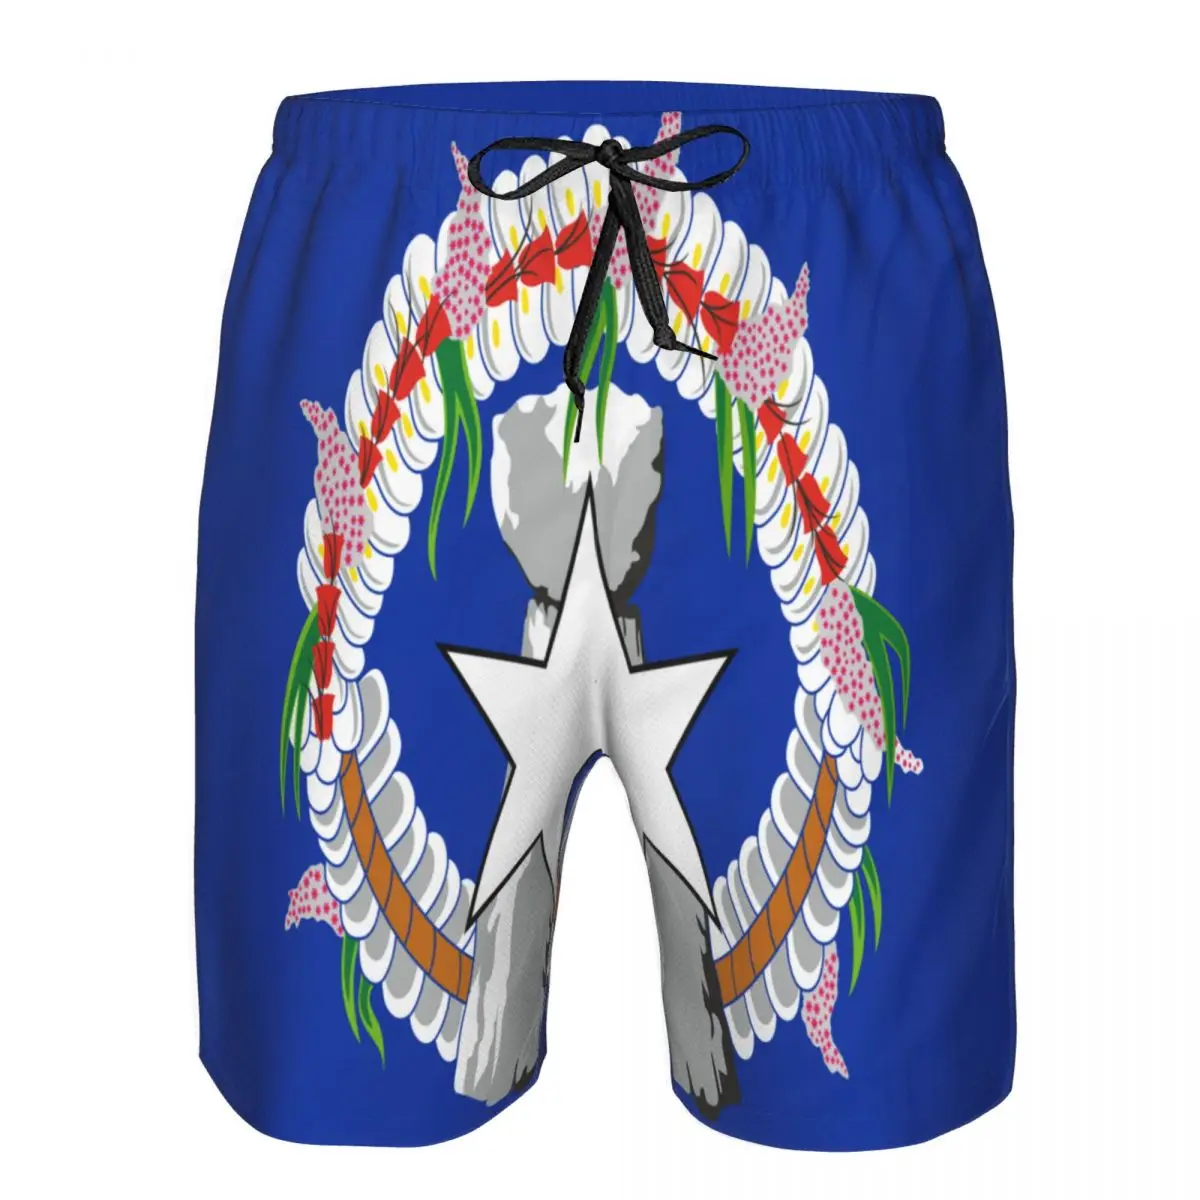 

Мужские пляжные шорты, быстросохнущие мужские плавки, купальник с флагом Северной Марианских островов, пляжная одежда, пляжные шорты для купания